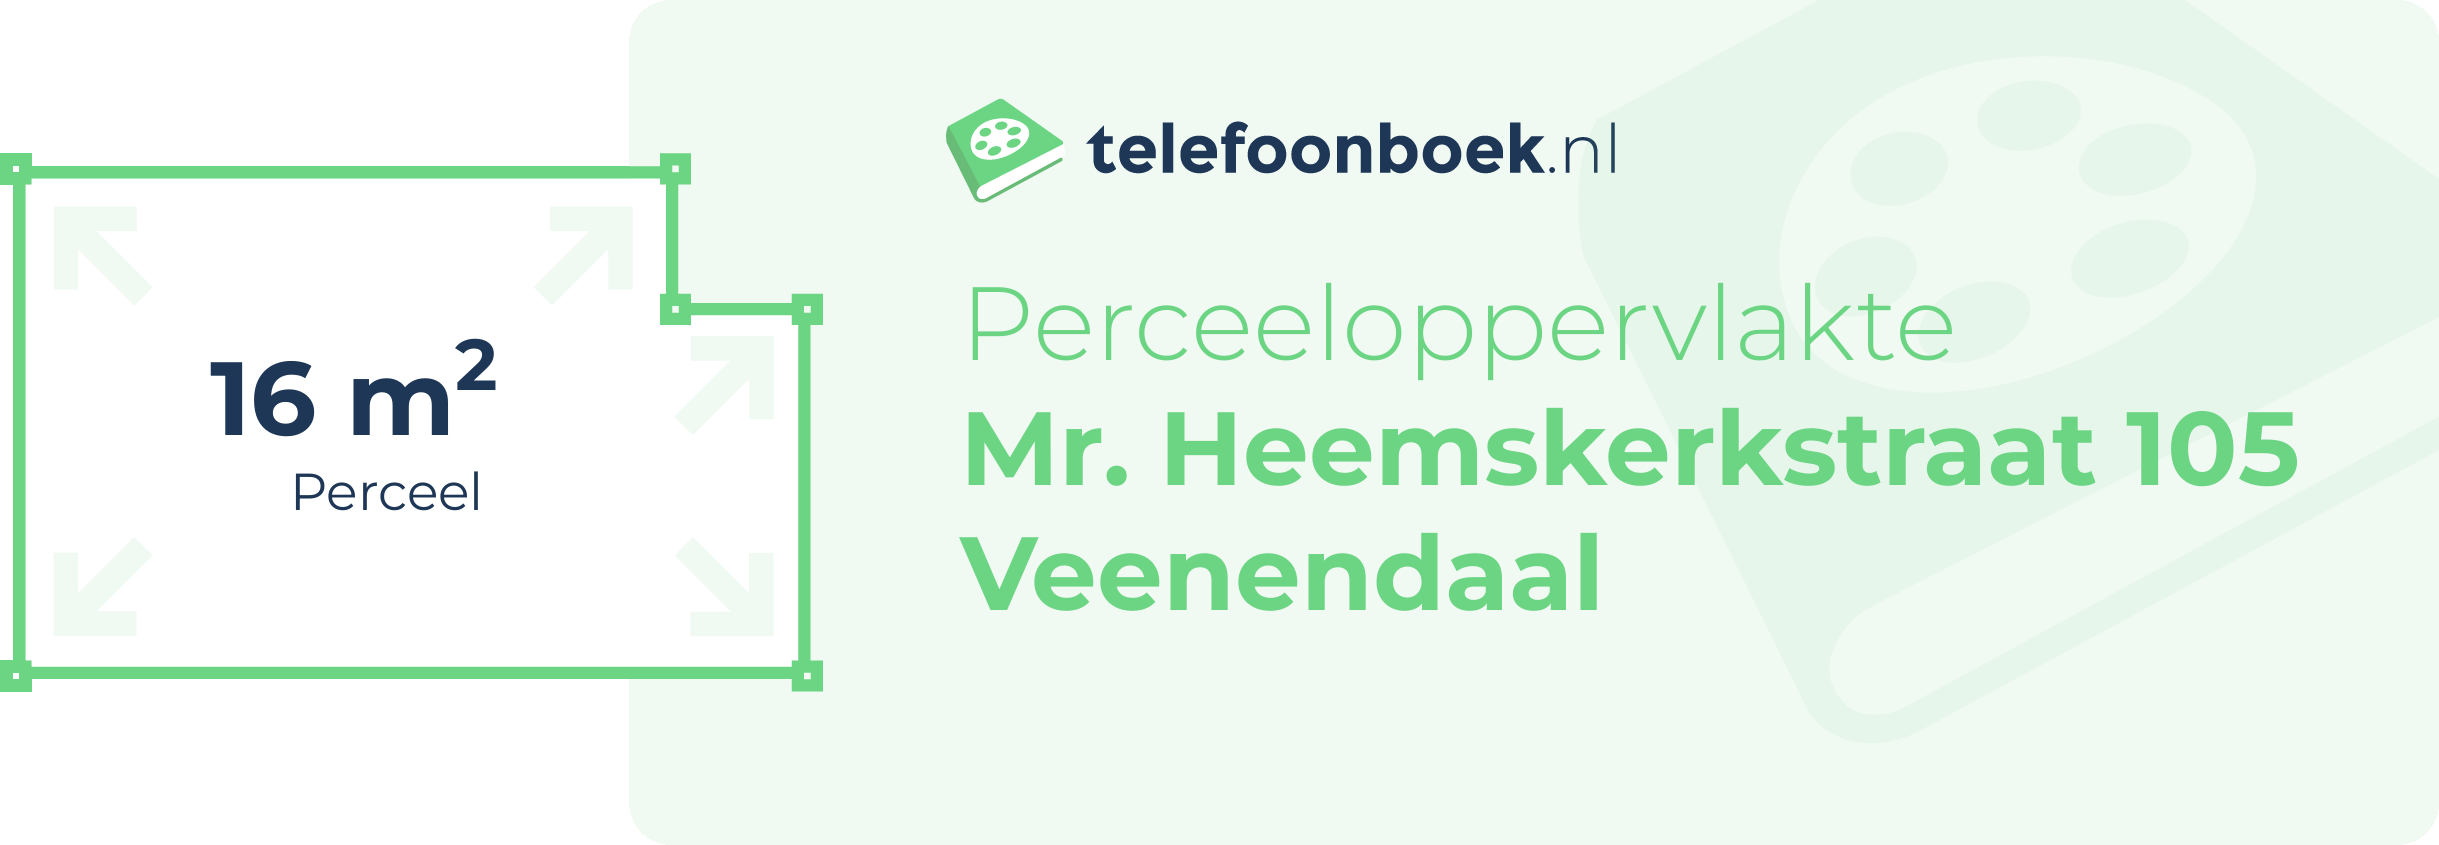 Perceeloppervlakte Mr. Heemskerkstraat 105 Veenendaal